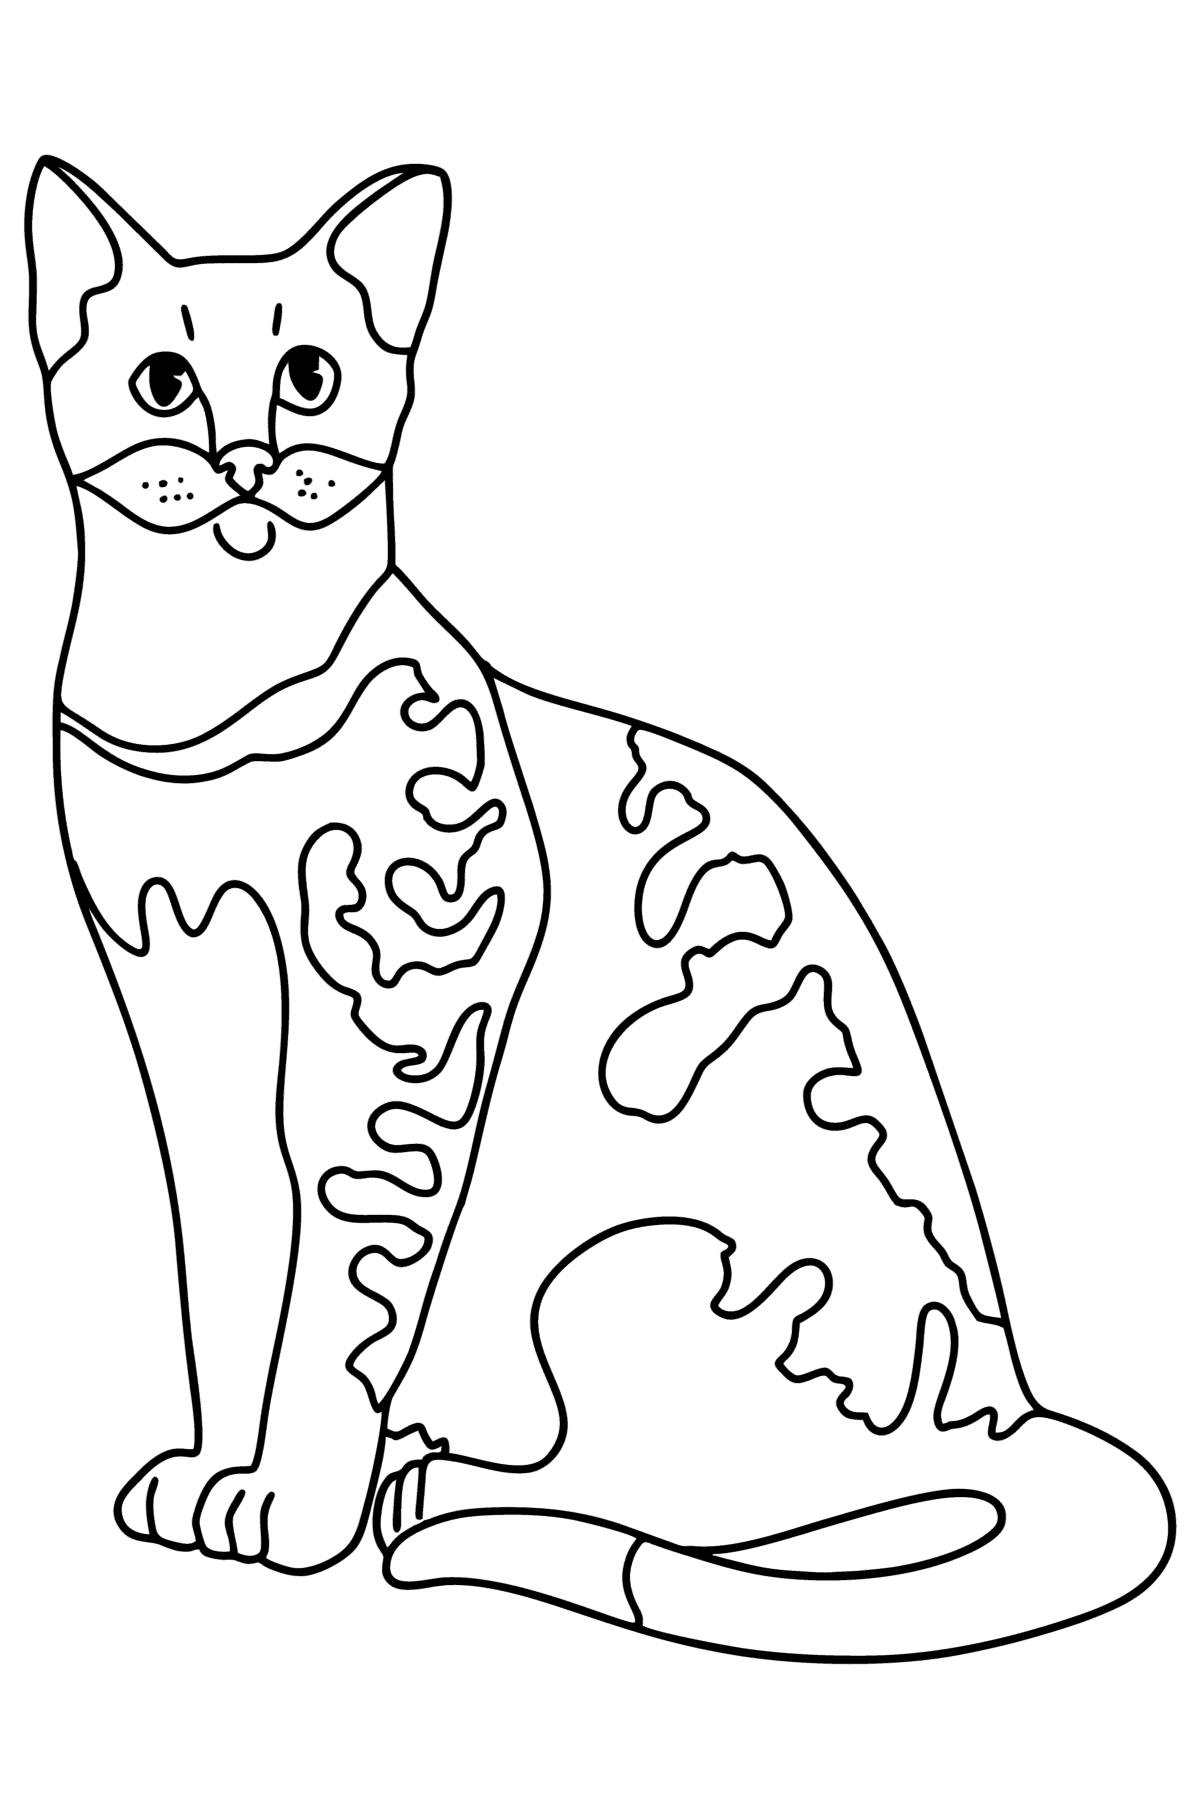 Boyama sayfası mısır mau kedisi - Boyamalar çocuklar için